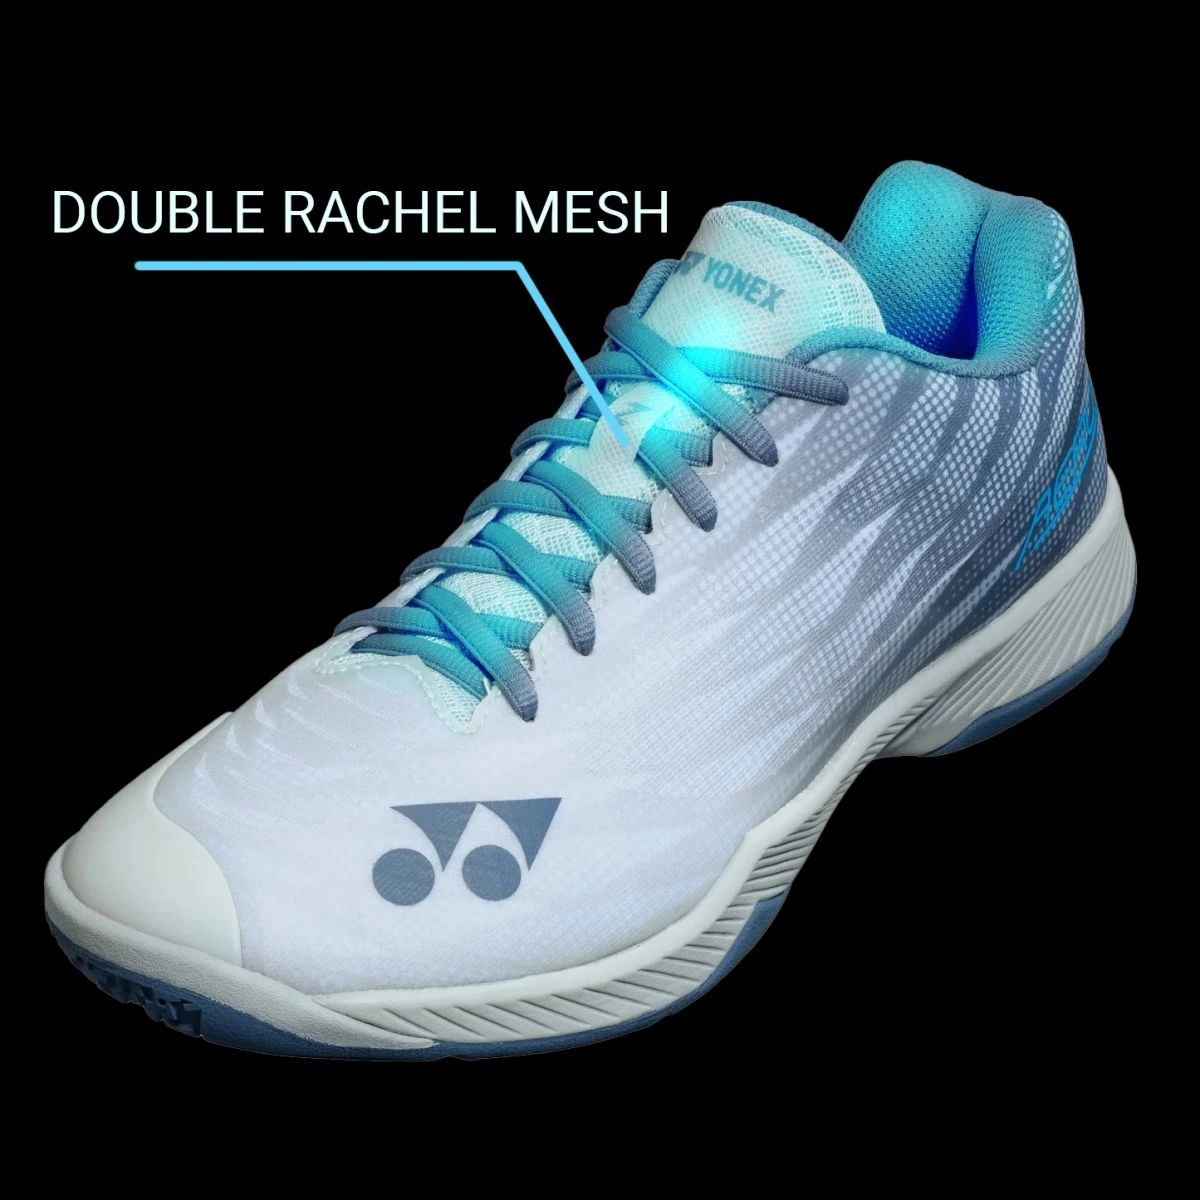 công nghệ DOUBLE RACHEL MESH của giày cầu lông Yonex